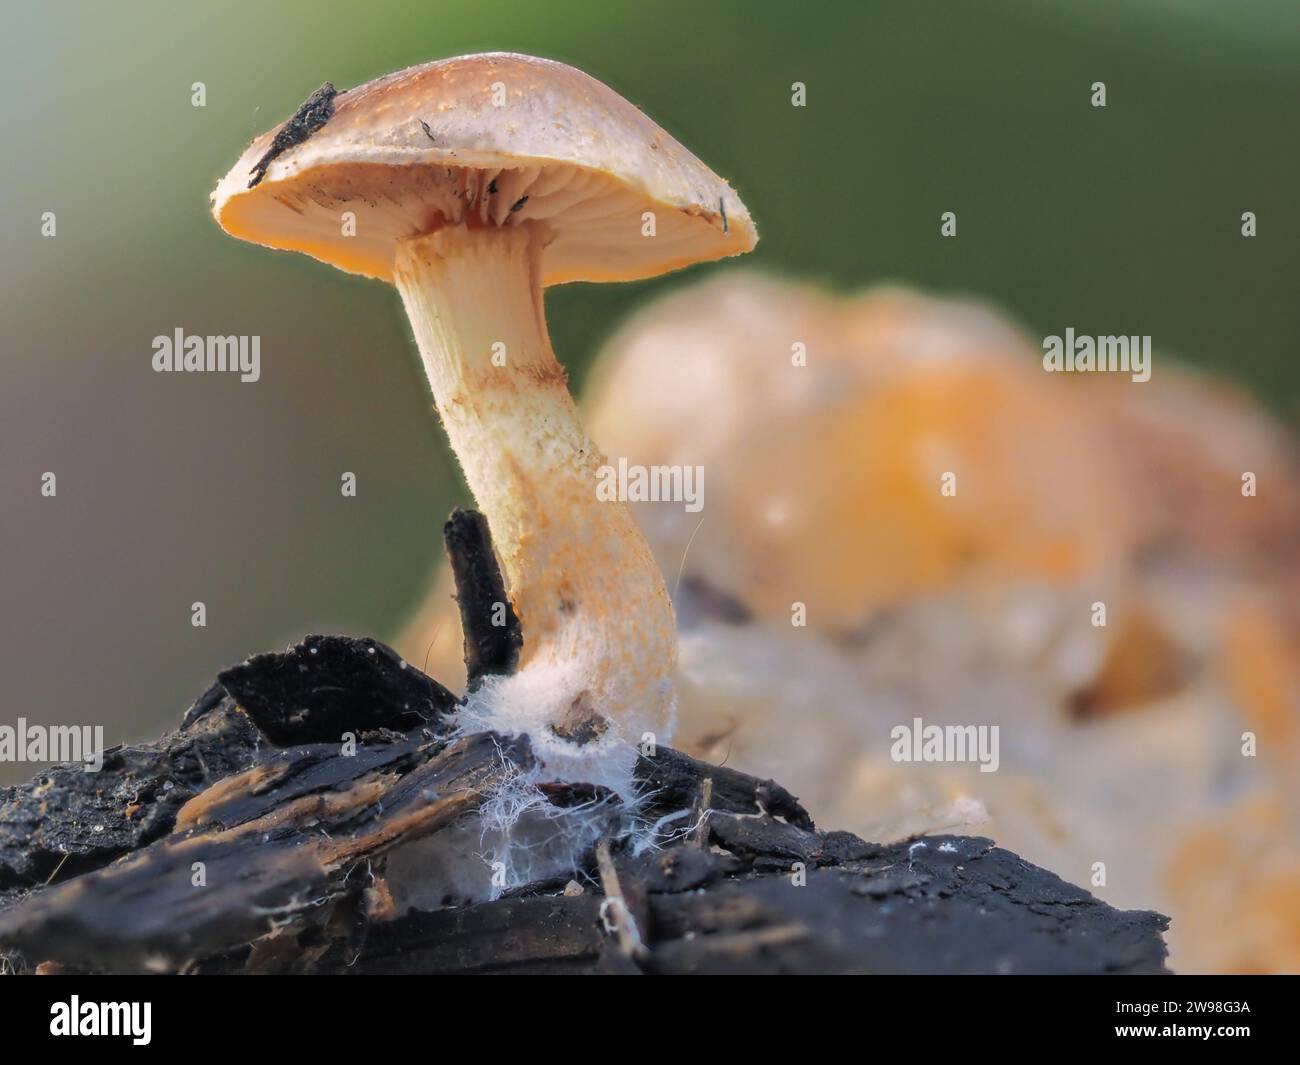 Eine Nahaufnahme eines isolierten kleinen Pilzes, der auf einem Stück verfallenen Holzes wächst. Stockfoto